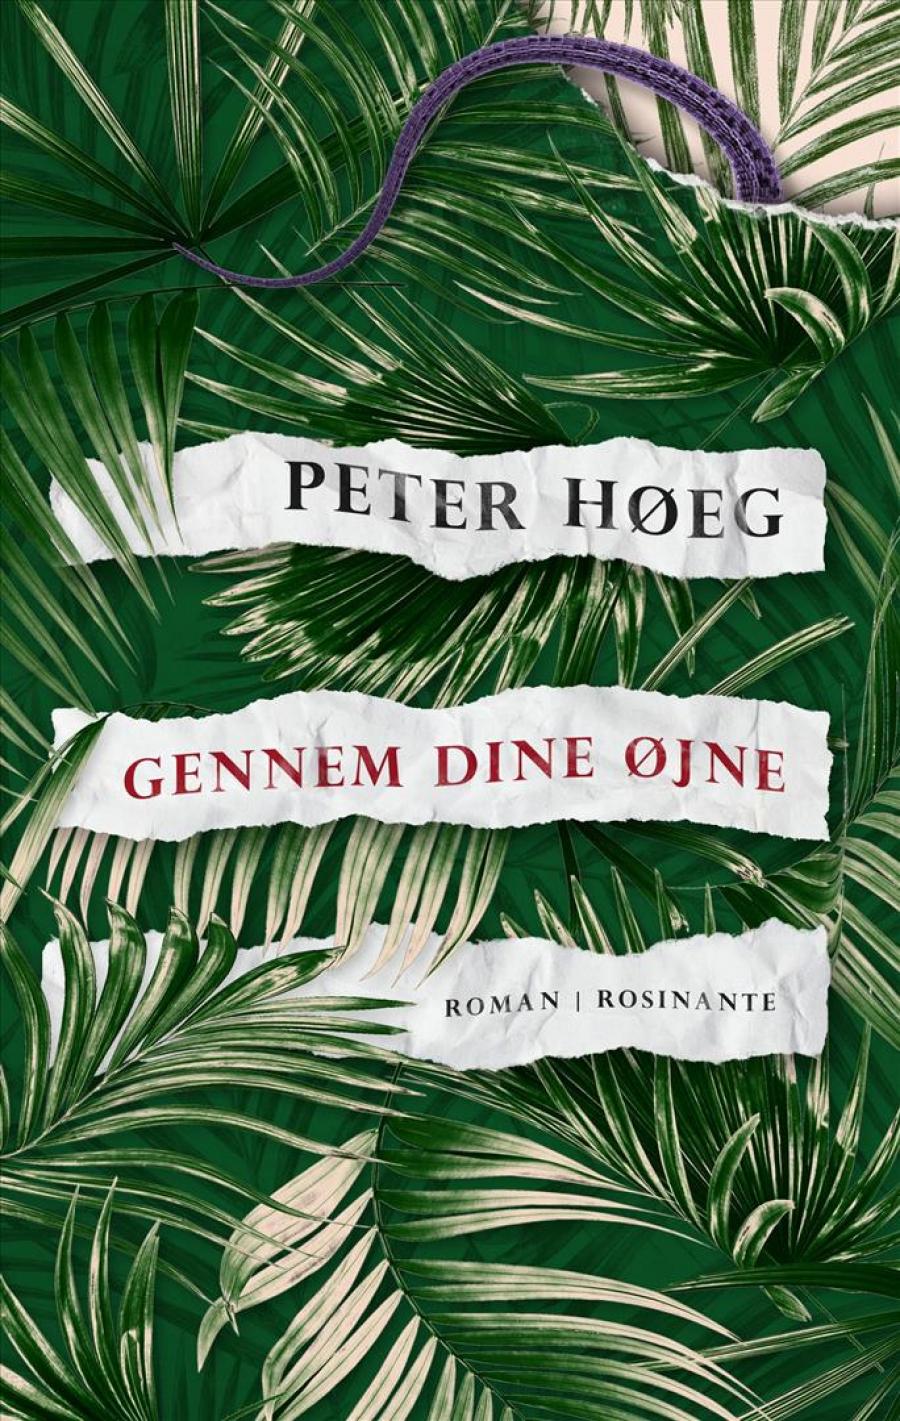 Gennem dine øjne af Peter Høeg